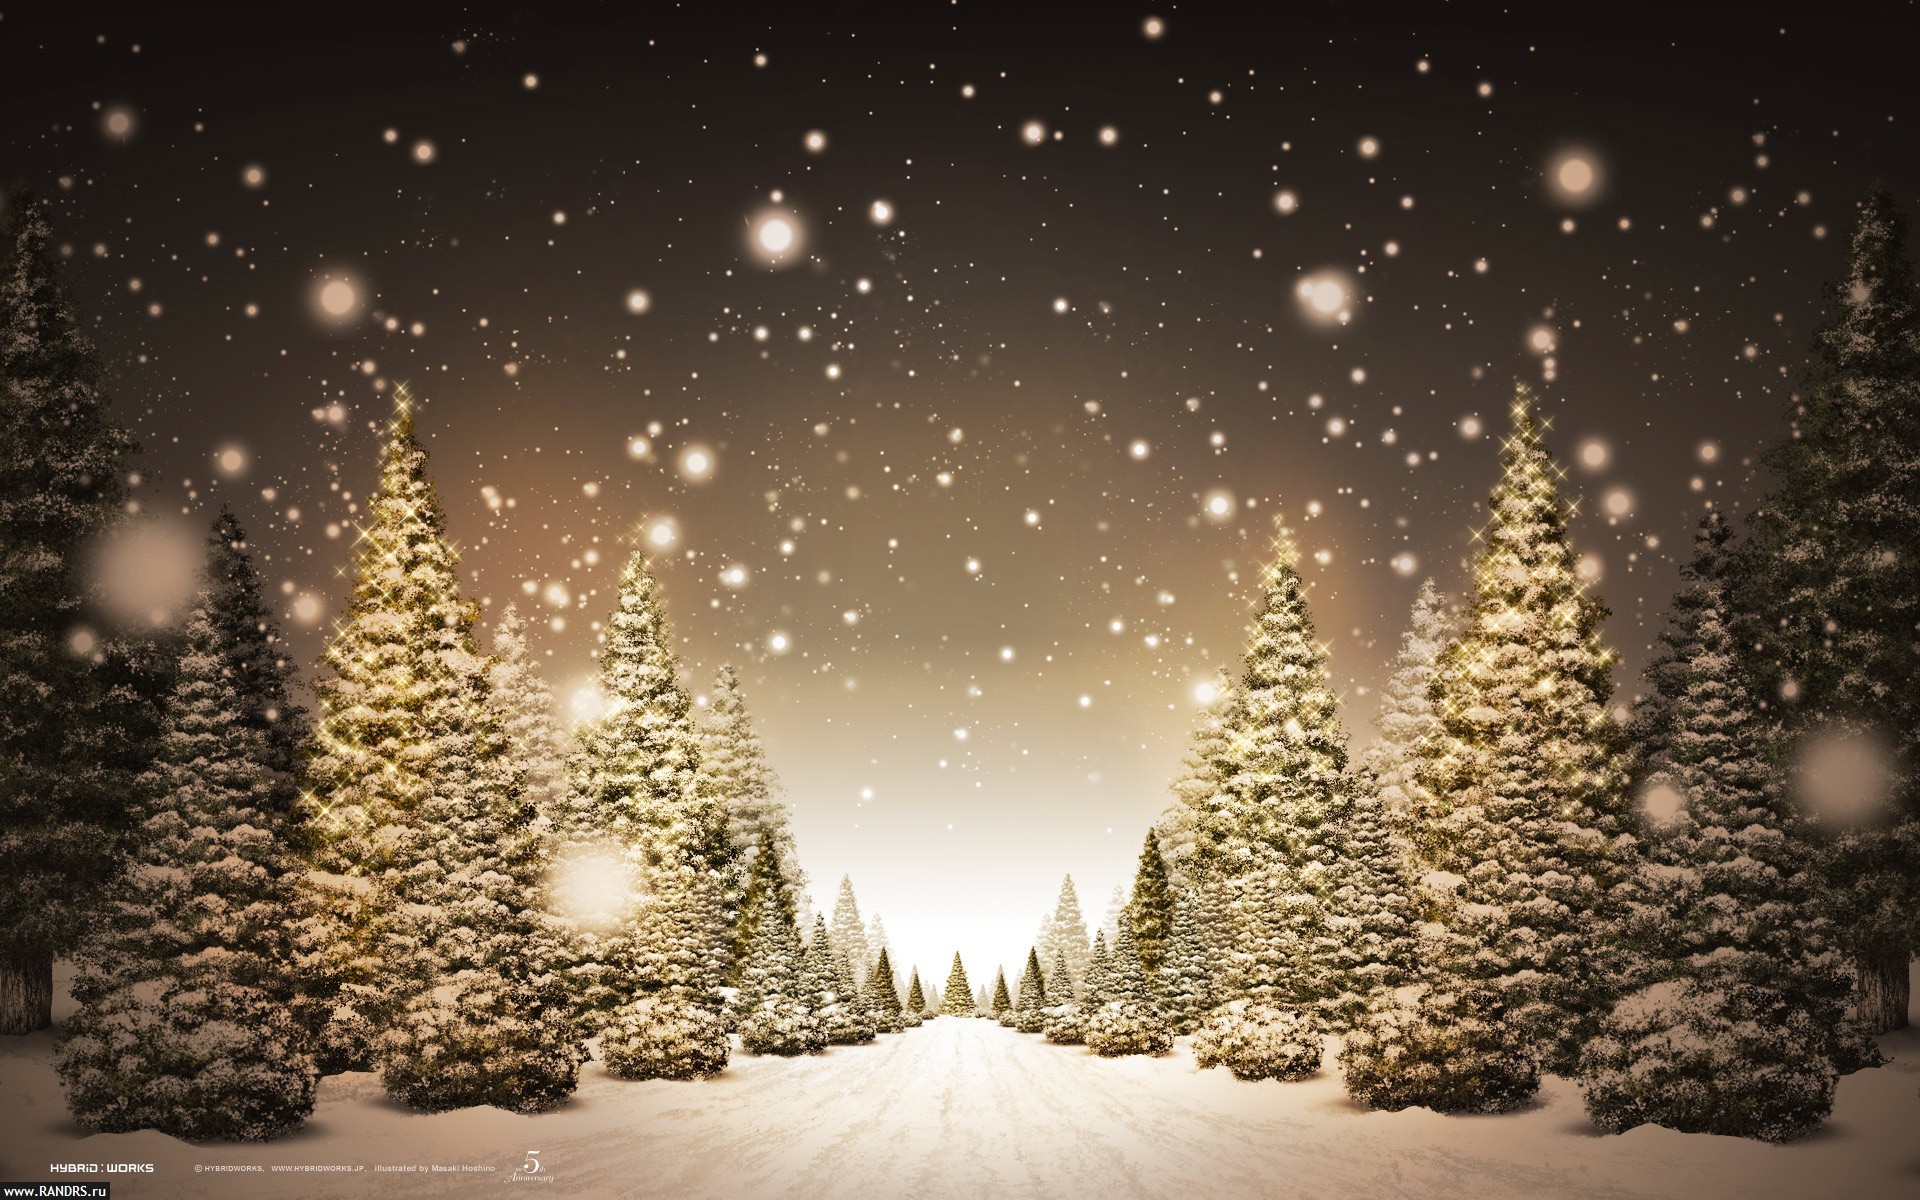 Скачать обои бесплатно Снег, Деревья, Пейзаж, Елки, Зима картинка на рабочий стол ПК